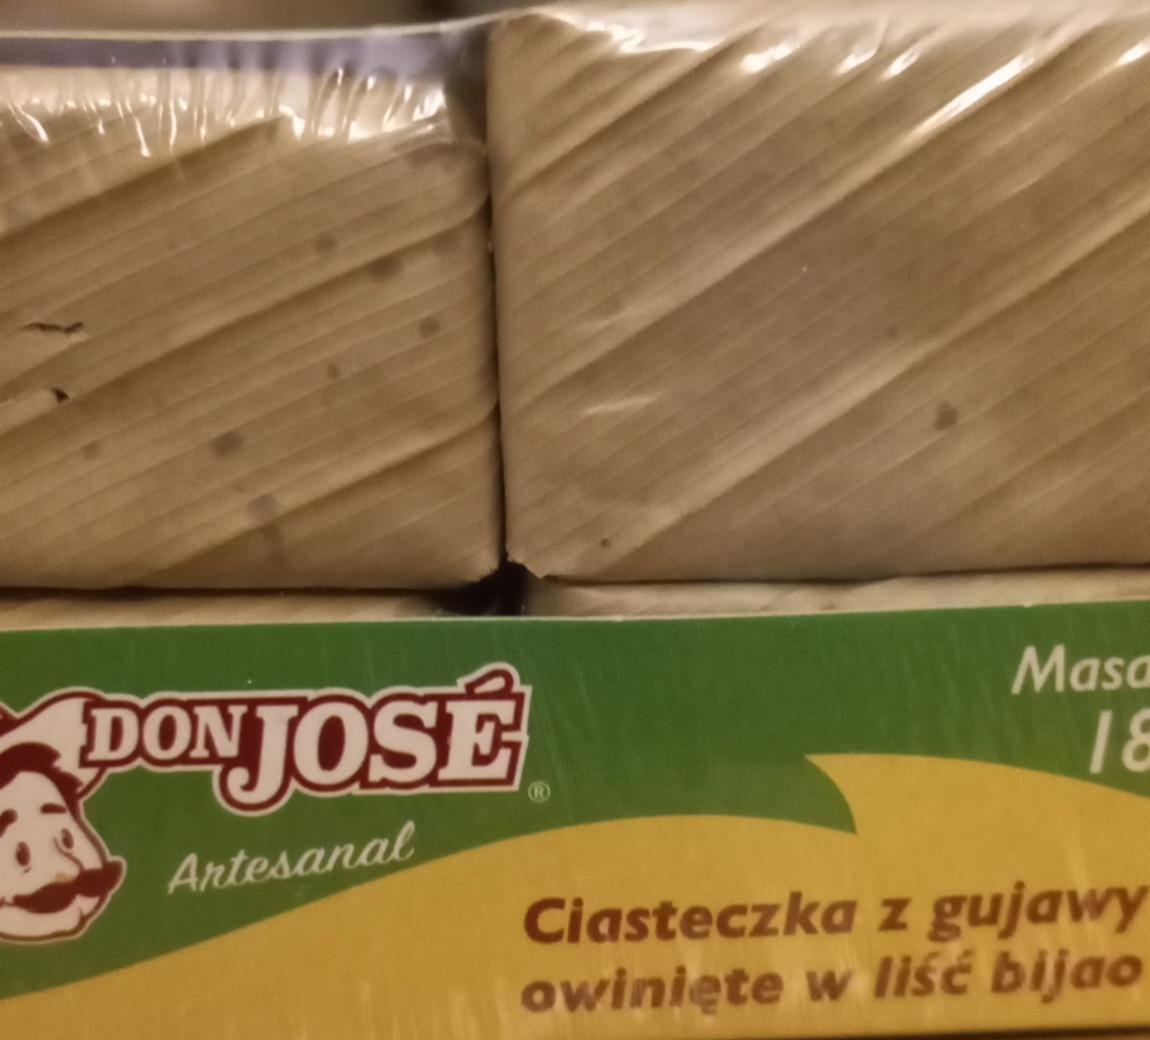 Zdjęcia - Ciasteczka z gujawy owinięte w liść bijao Don Jose